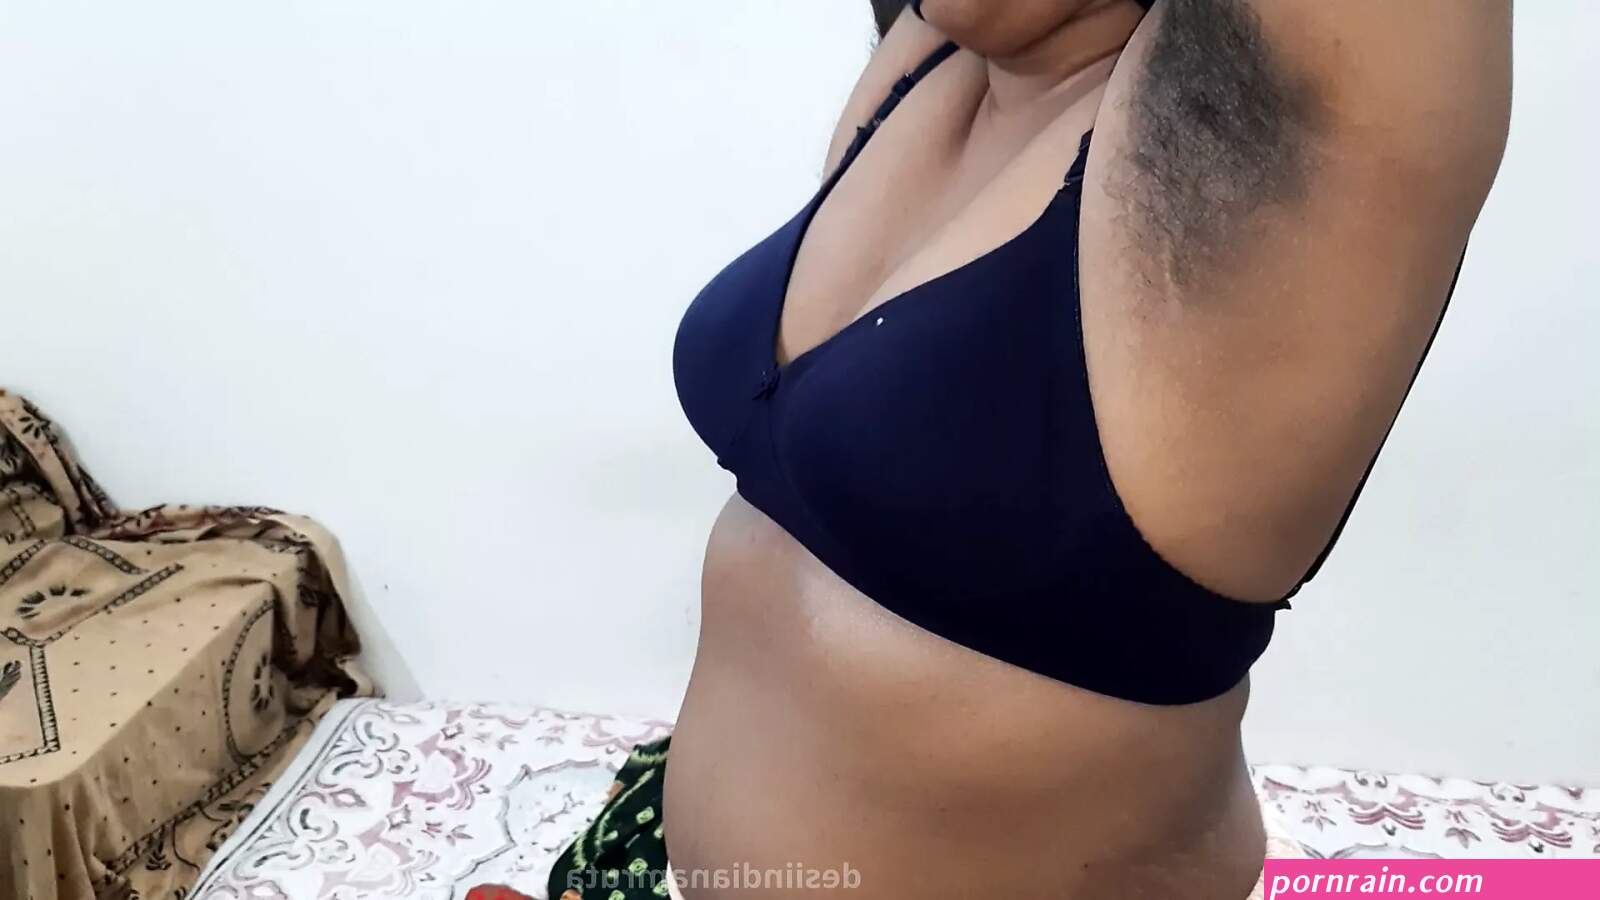 Naden Xxx - Kerala saree hot breast sex naden villge hd image | PORNrain.com